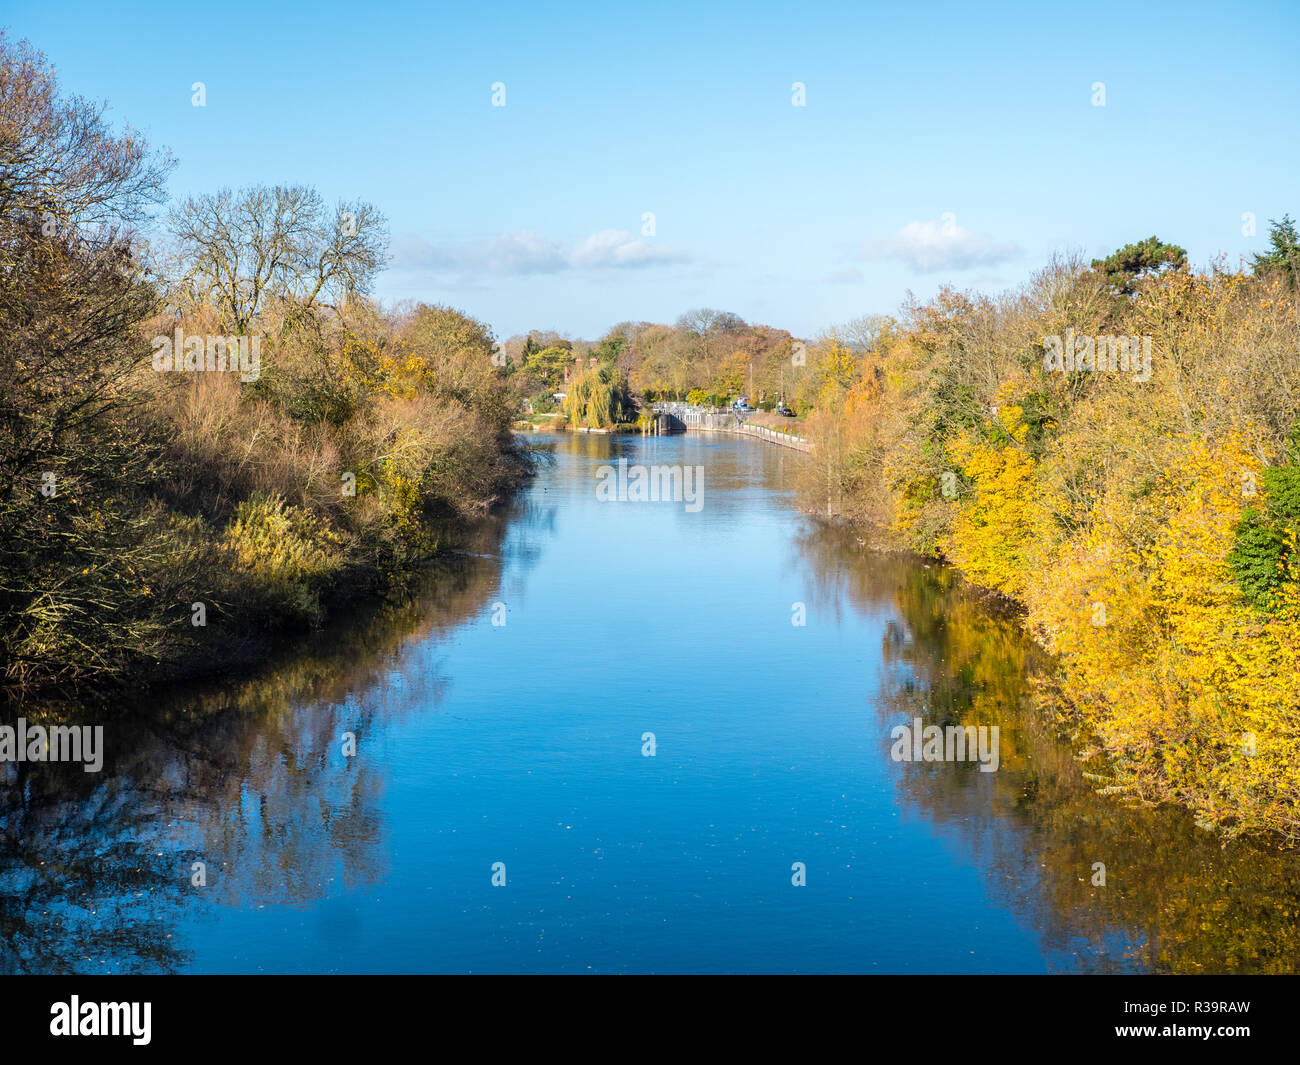 Bray serratura, sul fiume Tamigi, Maidenhead, Berkshire, Inghilterra, Regno Unito, GB. Foto Stock